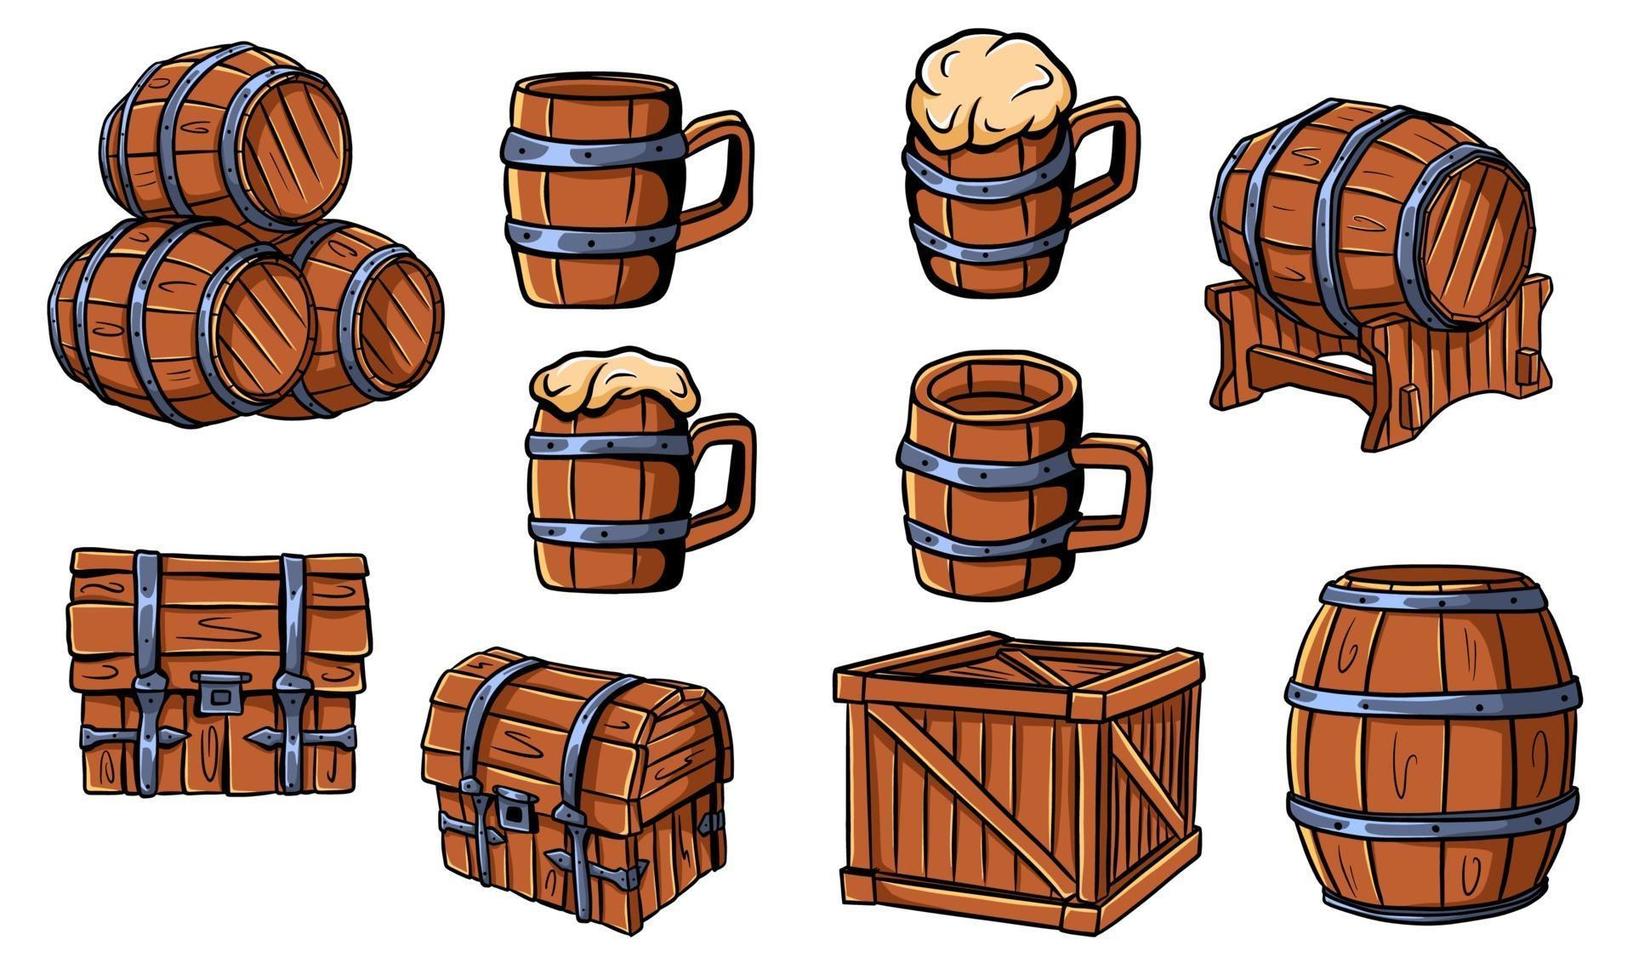 houten vaten, kisten, bier- of bierpullen. houten ambachten. doos. vaten voor wijn. vector illustratie geïsoleerd.